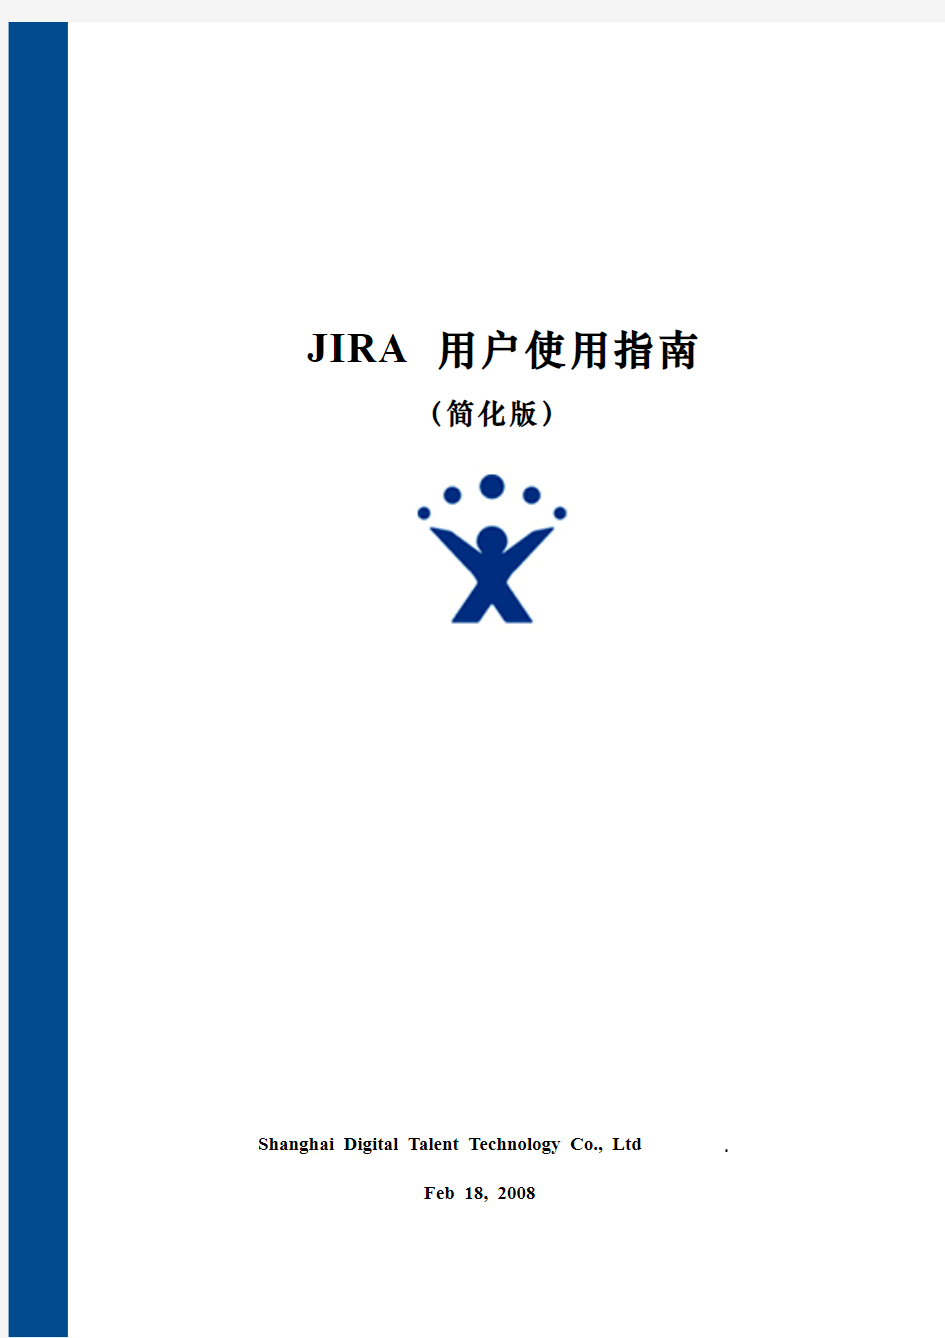 11JIRA用户使用指南-简化版v2